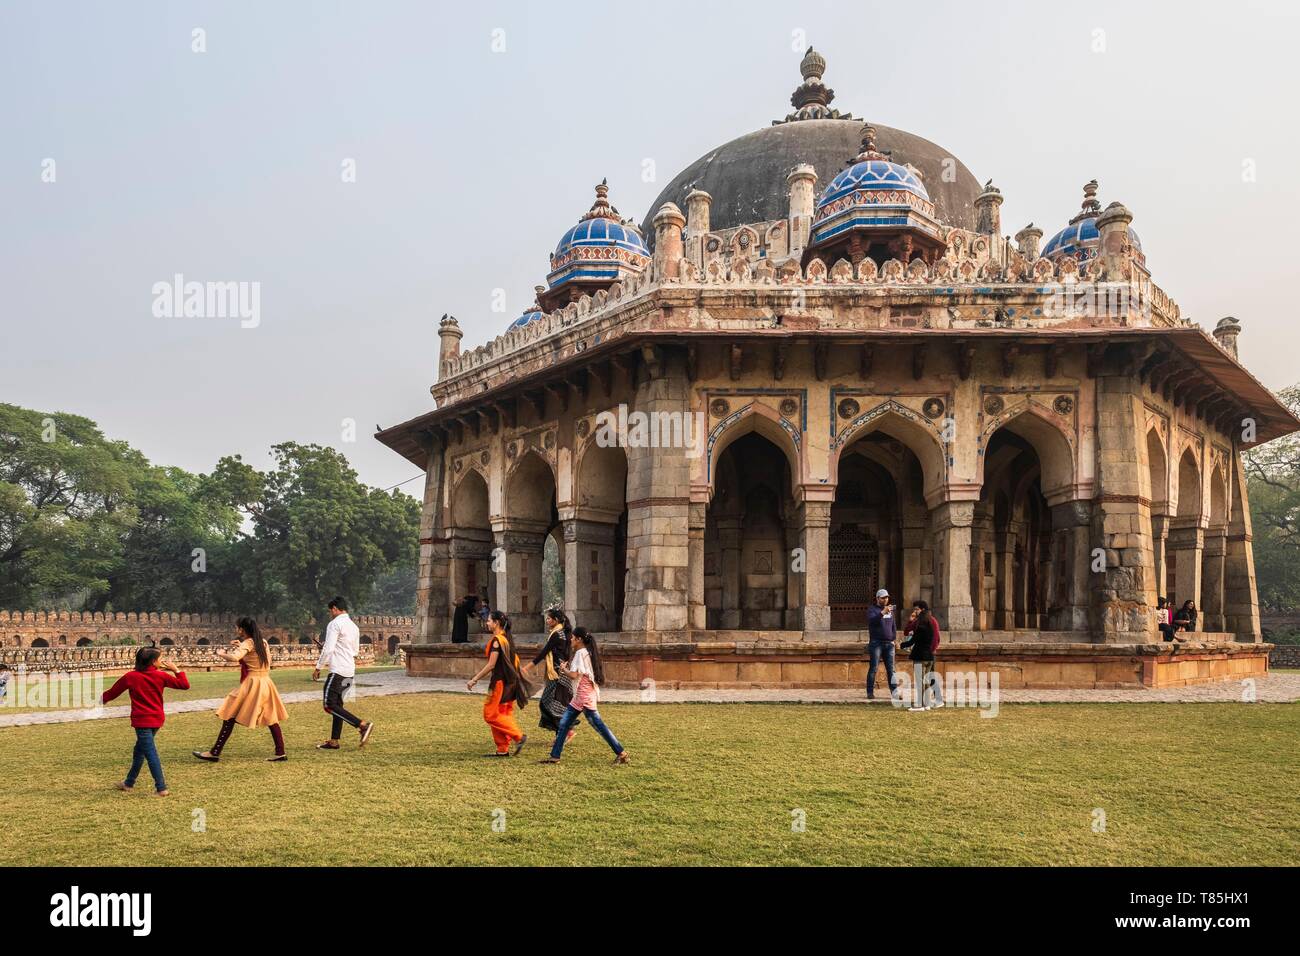 L'Inde, New Delhi, Tombe de Humayun, complexe l'architecture moghole, déclaré site du patrimoine mondial de l'UNESCO, Isa Khan's tomb Banque D'Images